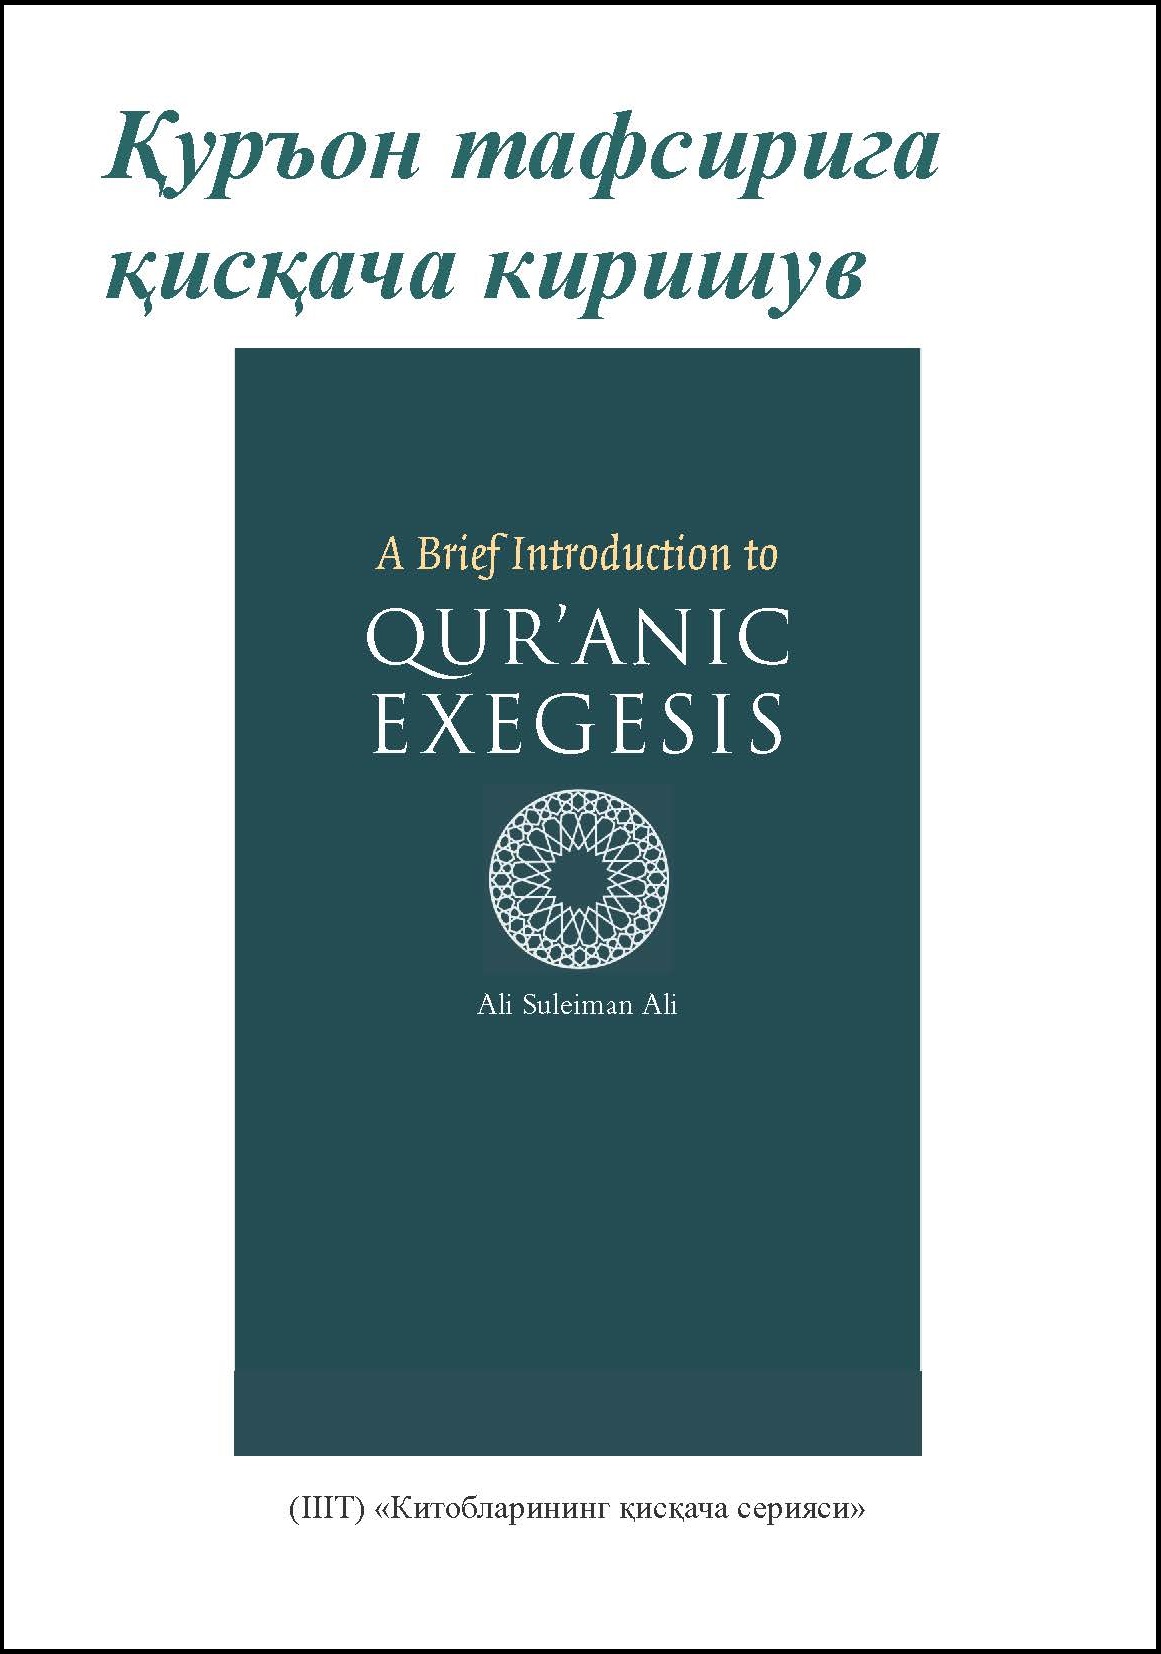 Uzbek: Китобларининг қисқача сериялари: Қуръон тафсирига қисқача киришув (Book-in-Brief: A Brief Introduction to Qur'anic Exegesis)